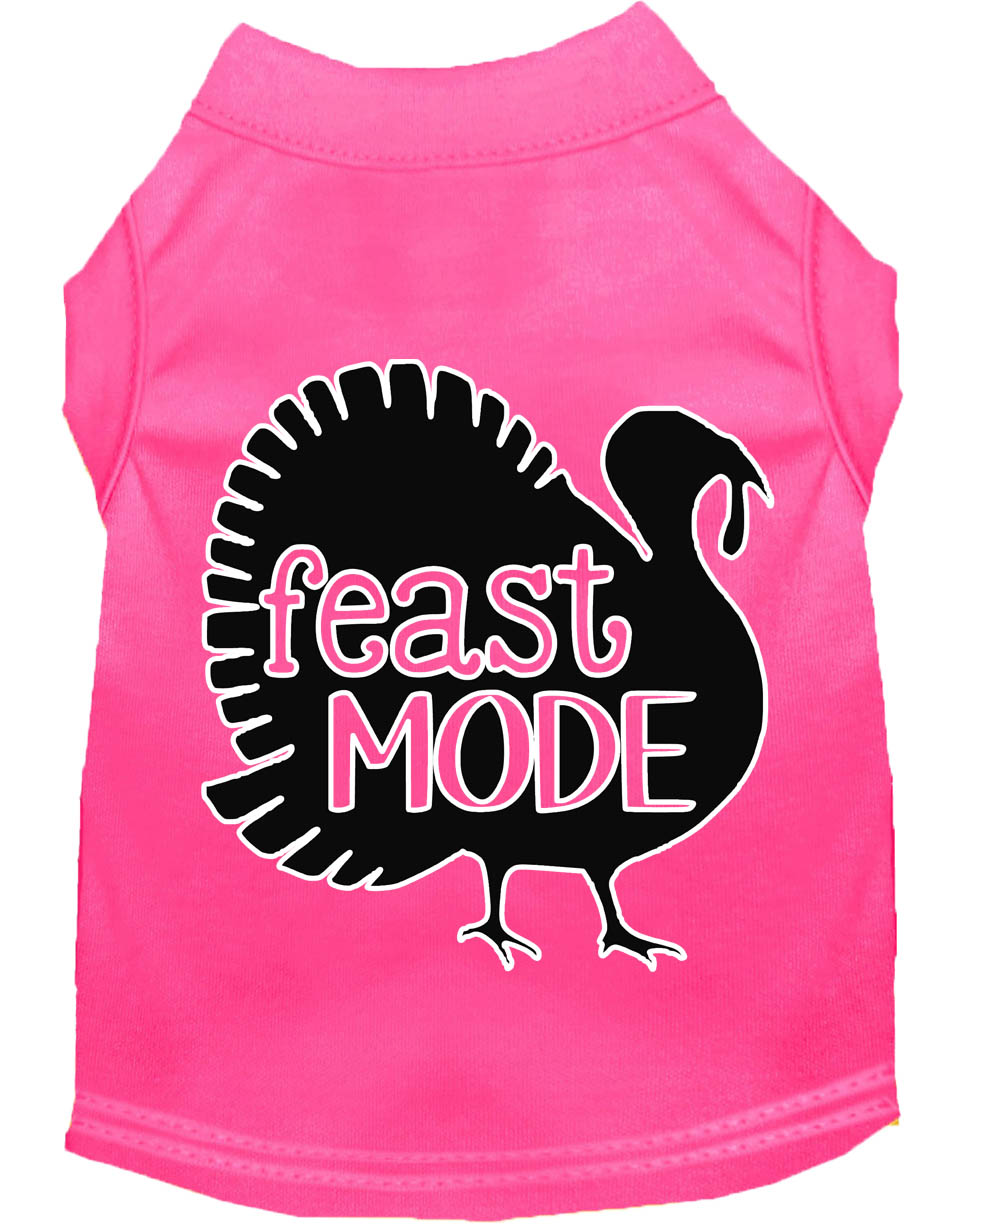 Feast Mode Screen Print Dog Shirt Bright Pink XL